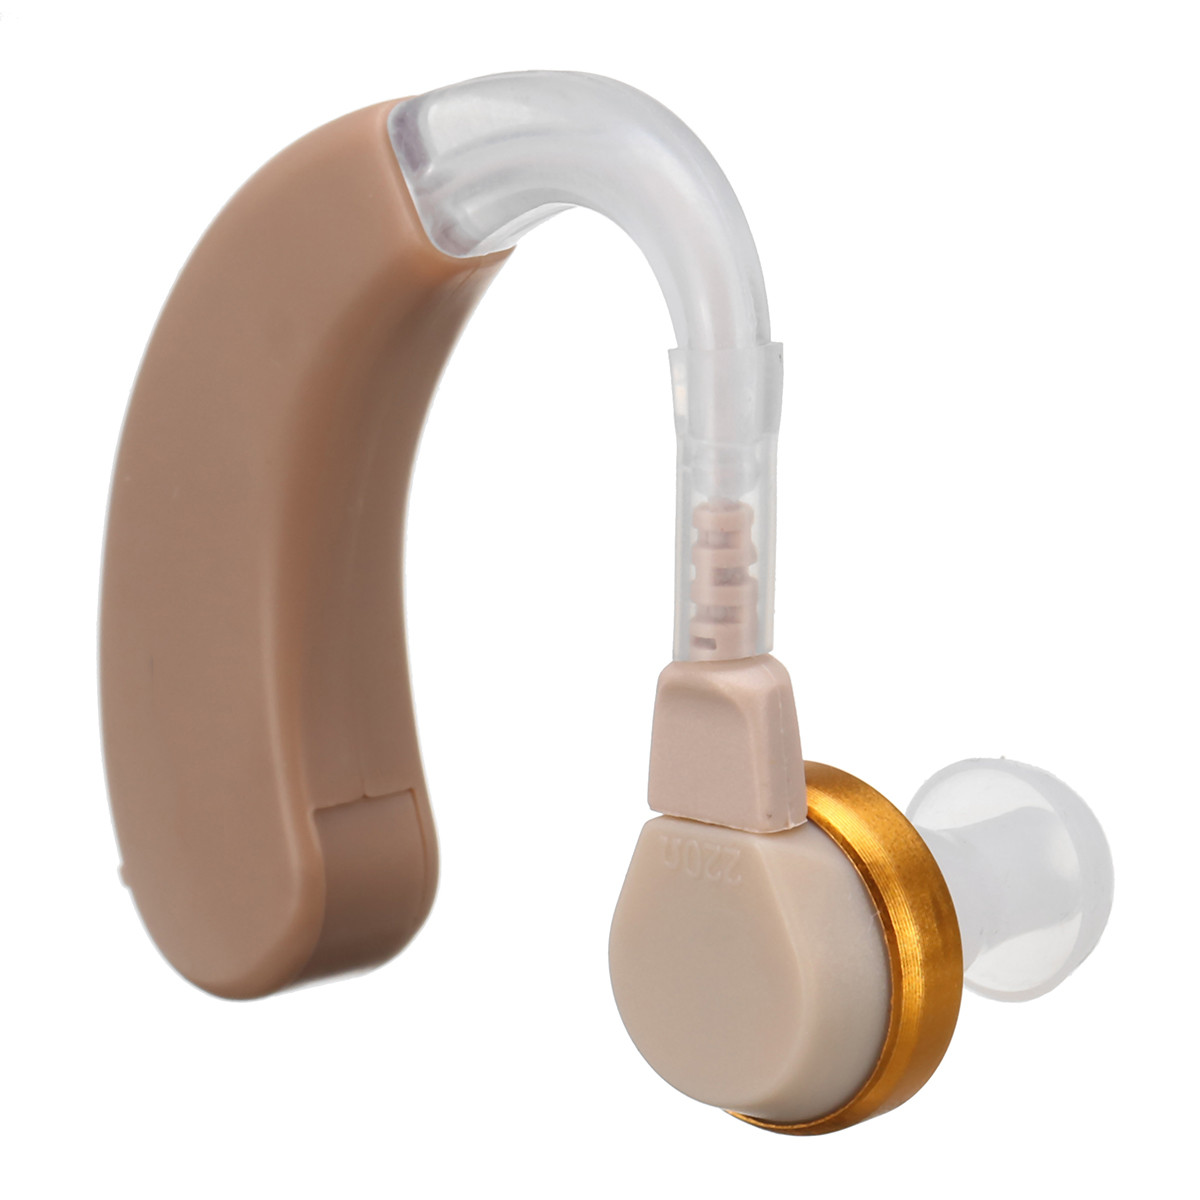 F-135-Mini-Portable-Hearing-Aid-Sound-Voice-Amplifier-Behind-Ear-Enhancement-Ear-Hearing-Aid-1401112